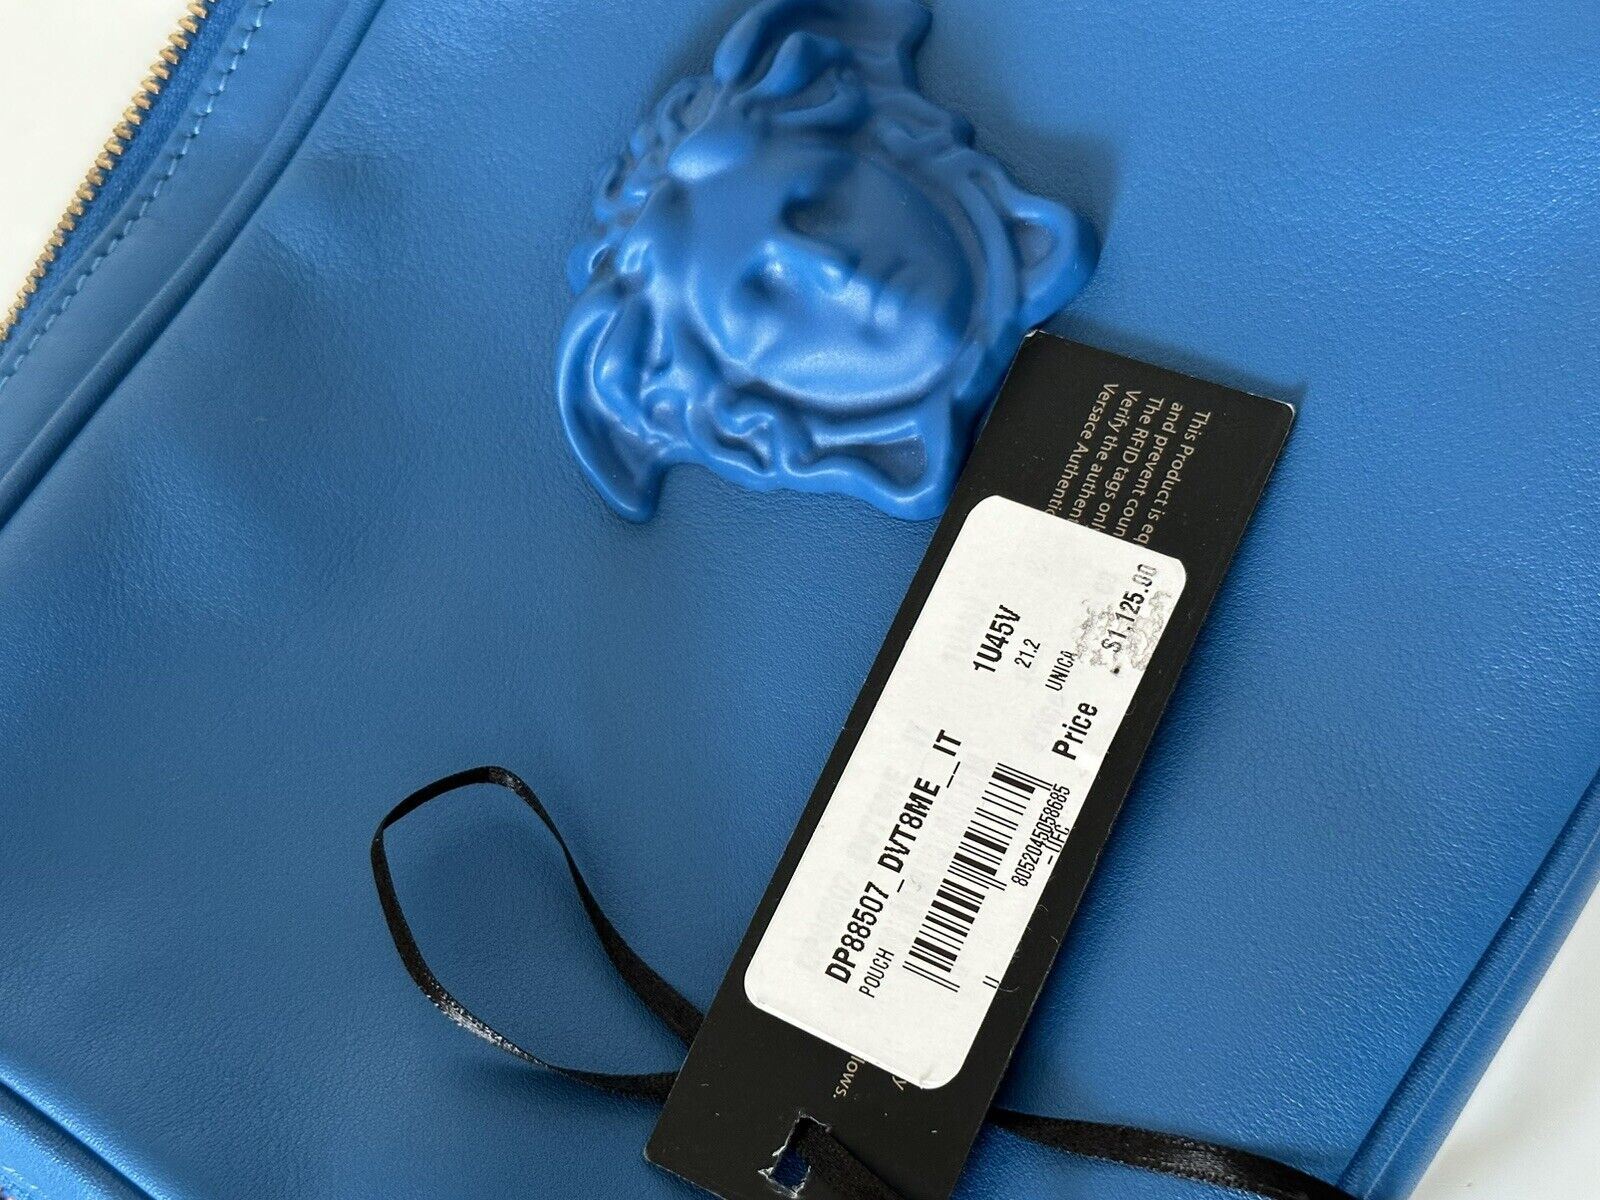 Neu mit Etikett: 1125 $ Versace Medusa Head Leder-Clutch in Blau DP88507 Hergestellt in Italien 